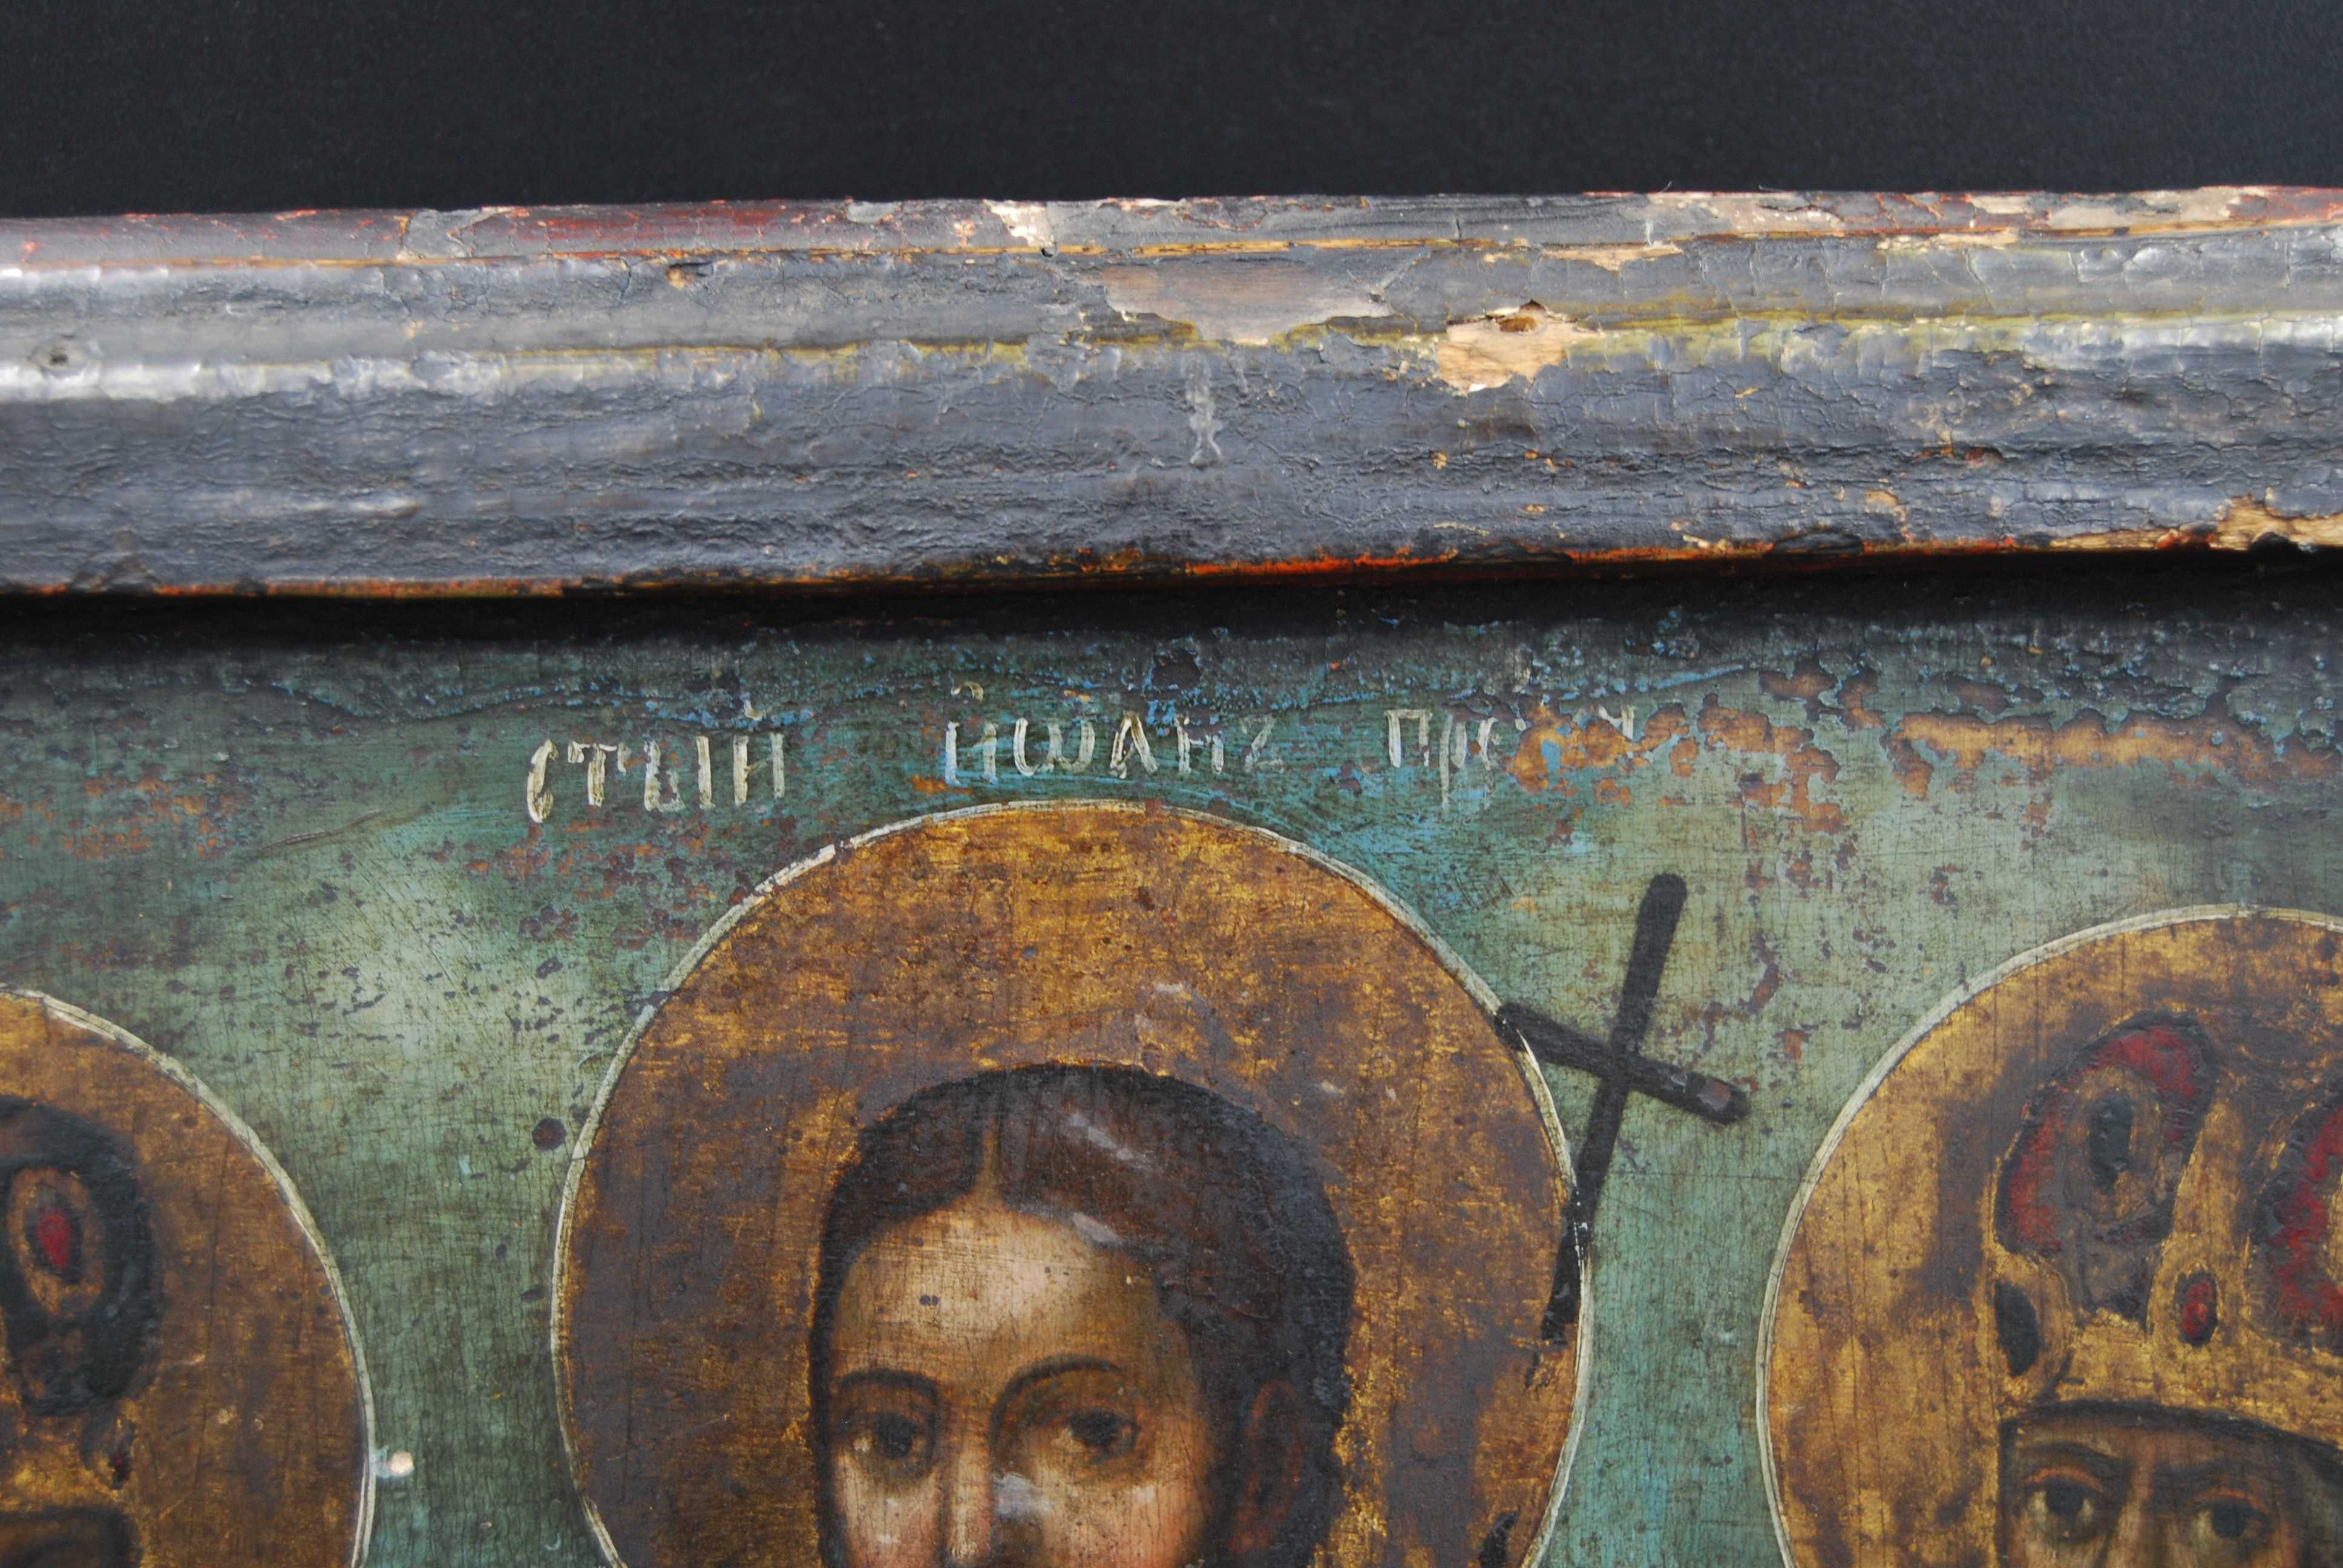 Duża ikona z wizerunkiem trzech Świętych XIX wiek